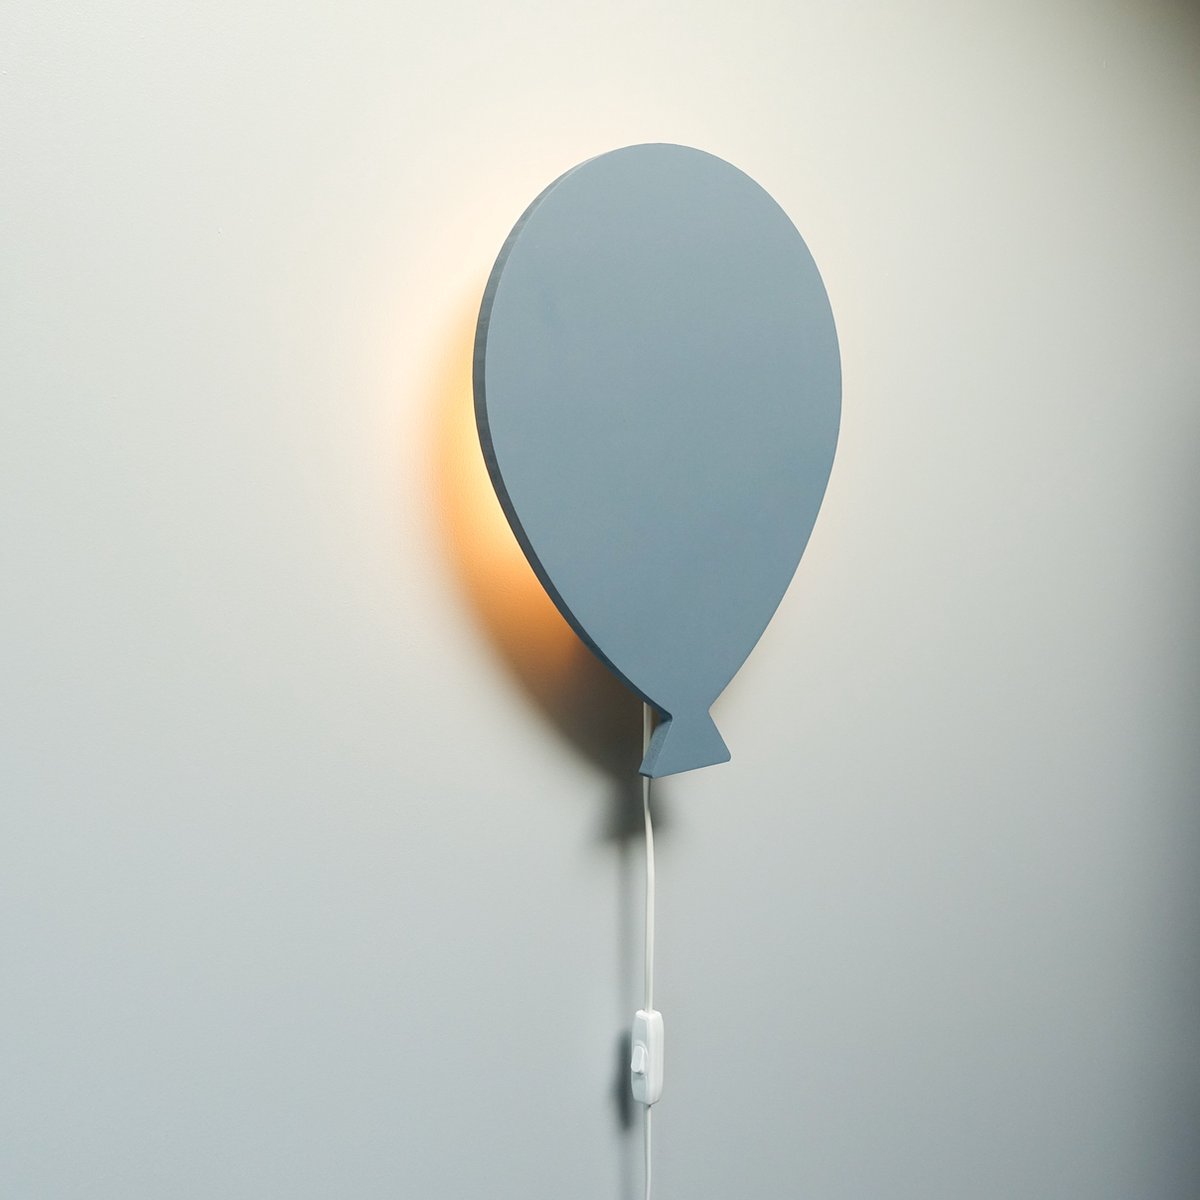 Applique chambre d'enfant Ballon - Lampe en bois Blauw pour sur le mur |  bol.com